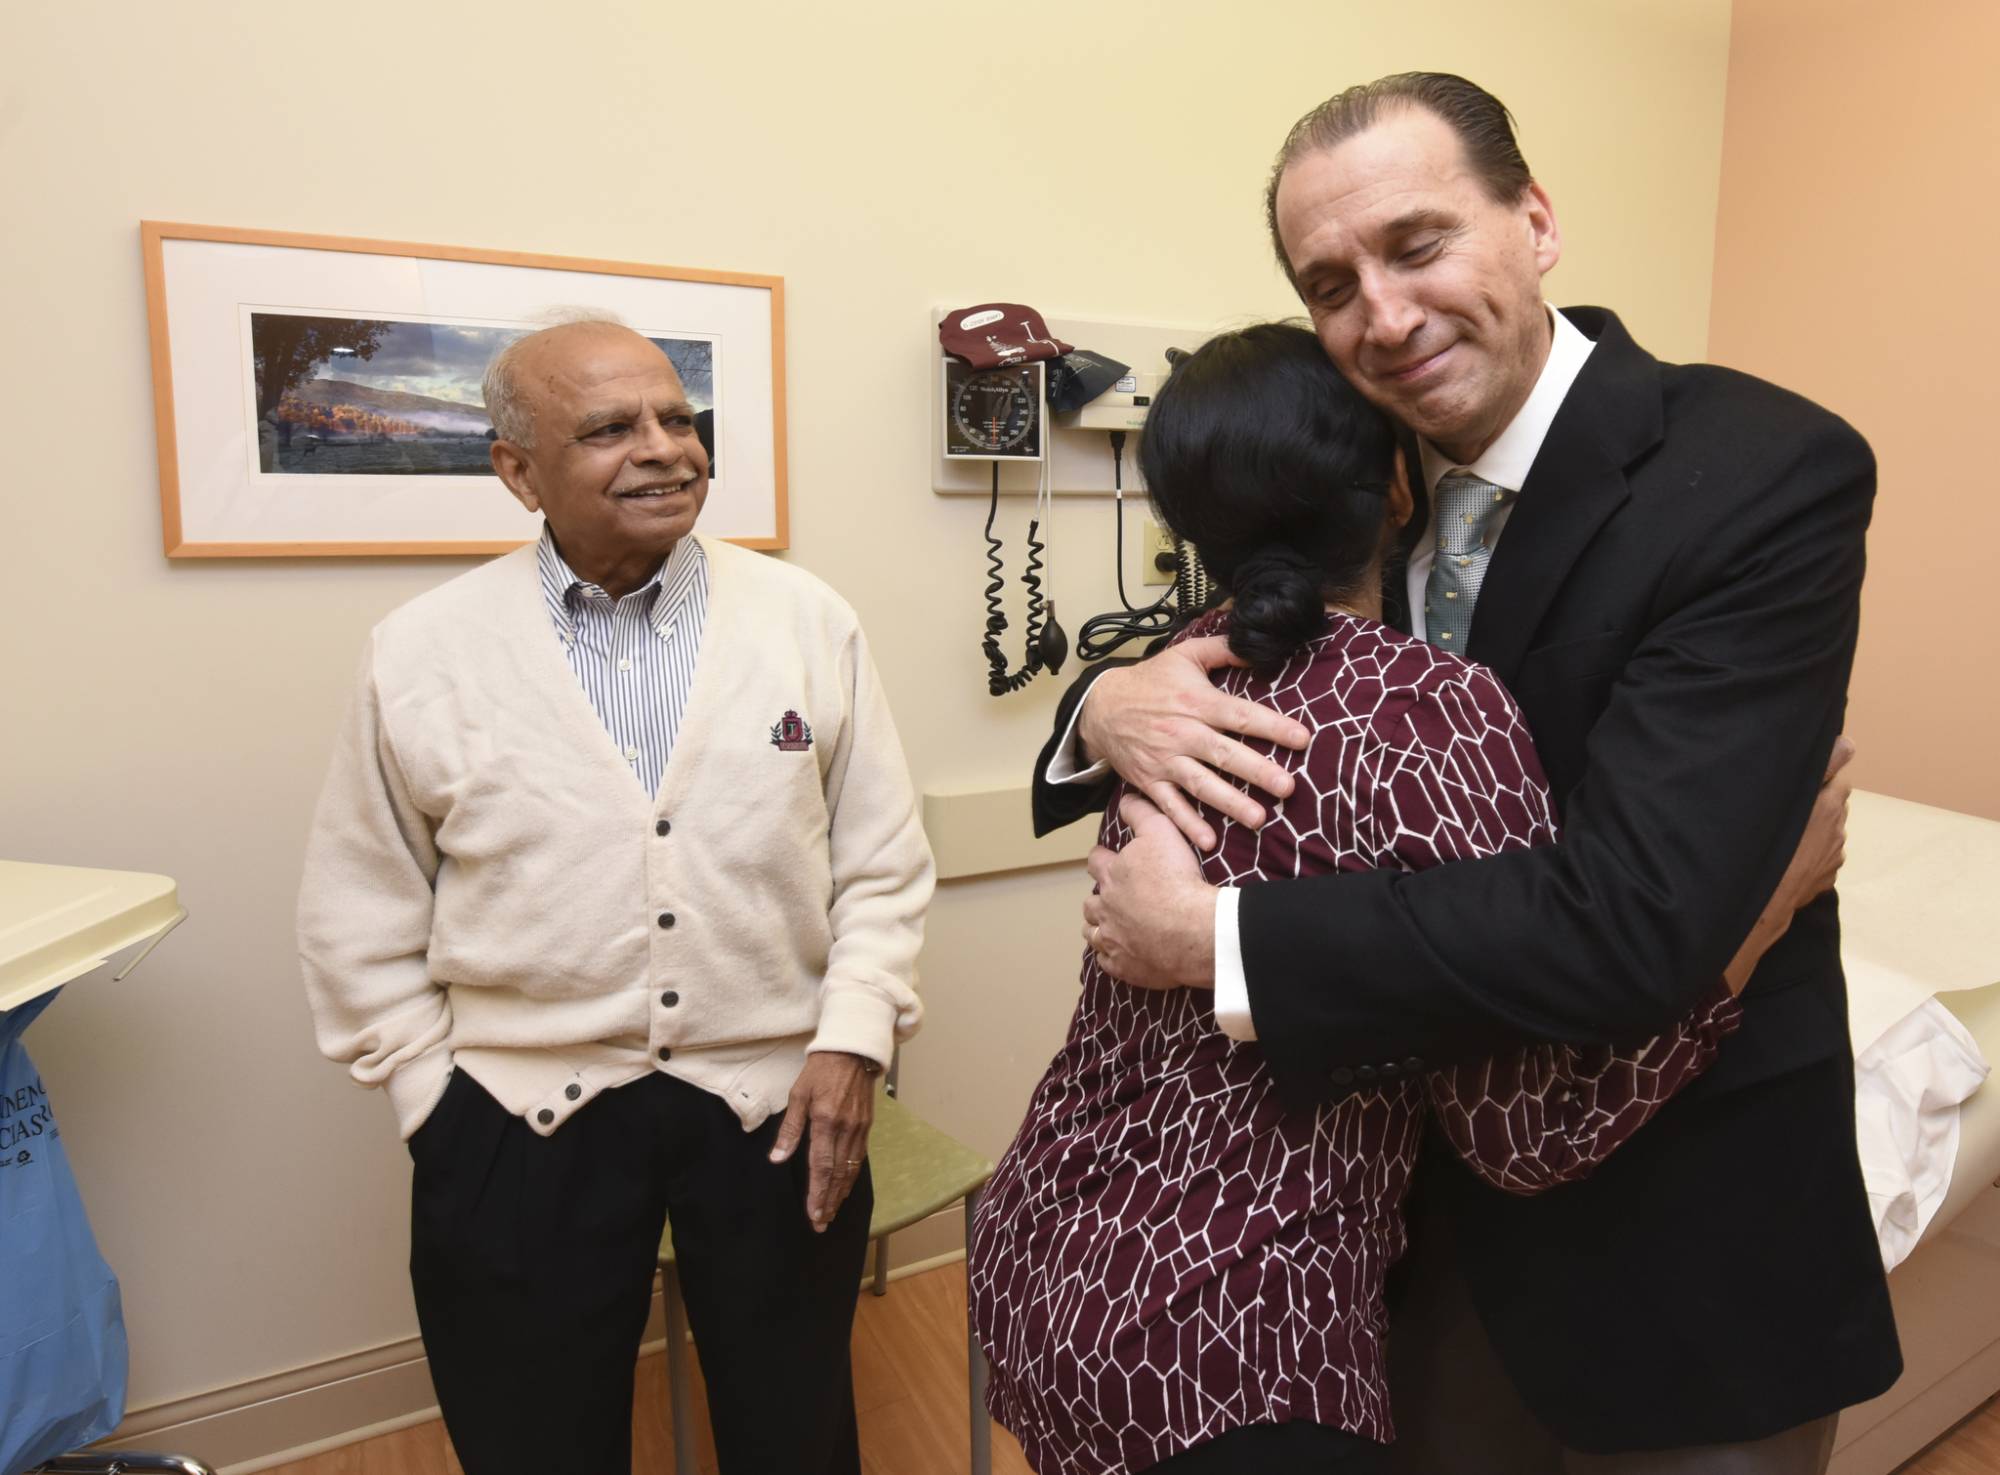 Dr. Daniel Albo hugs patient during visit